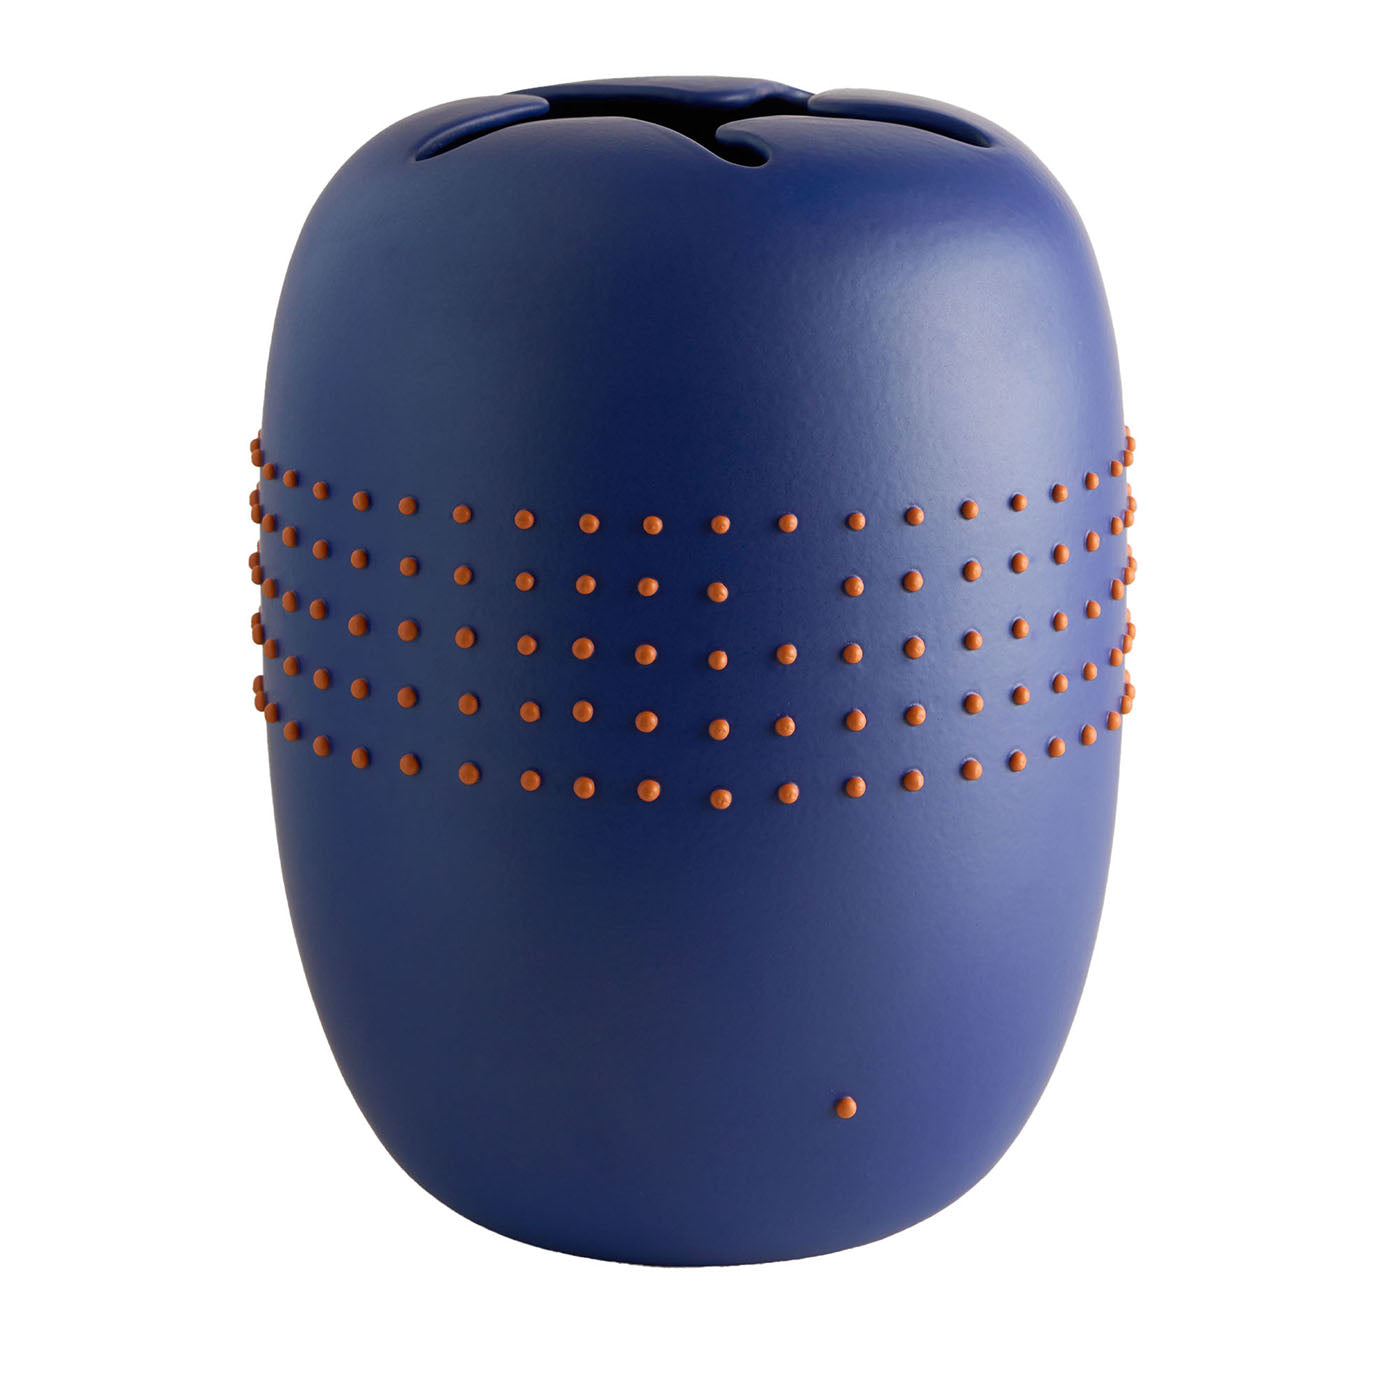 Code Blue Keramik-Vase mit roten Punkten von Arik Levy - Hauptansicht